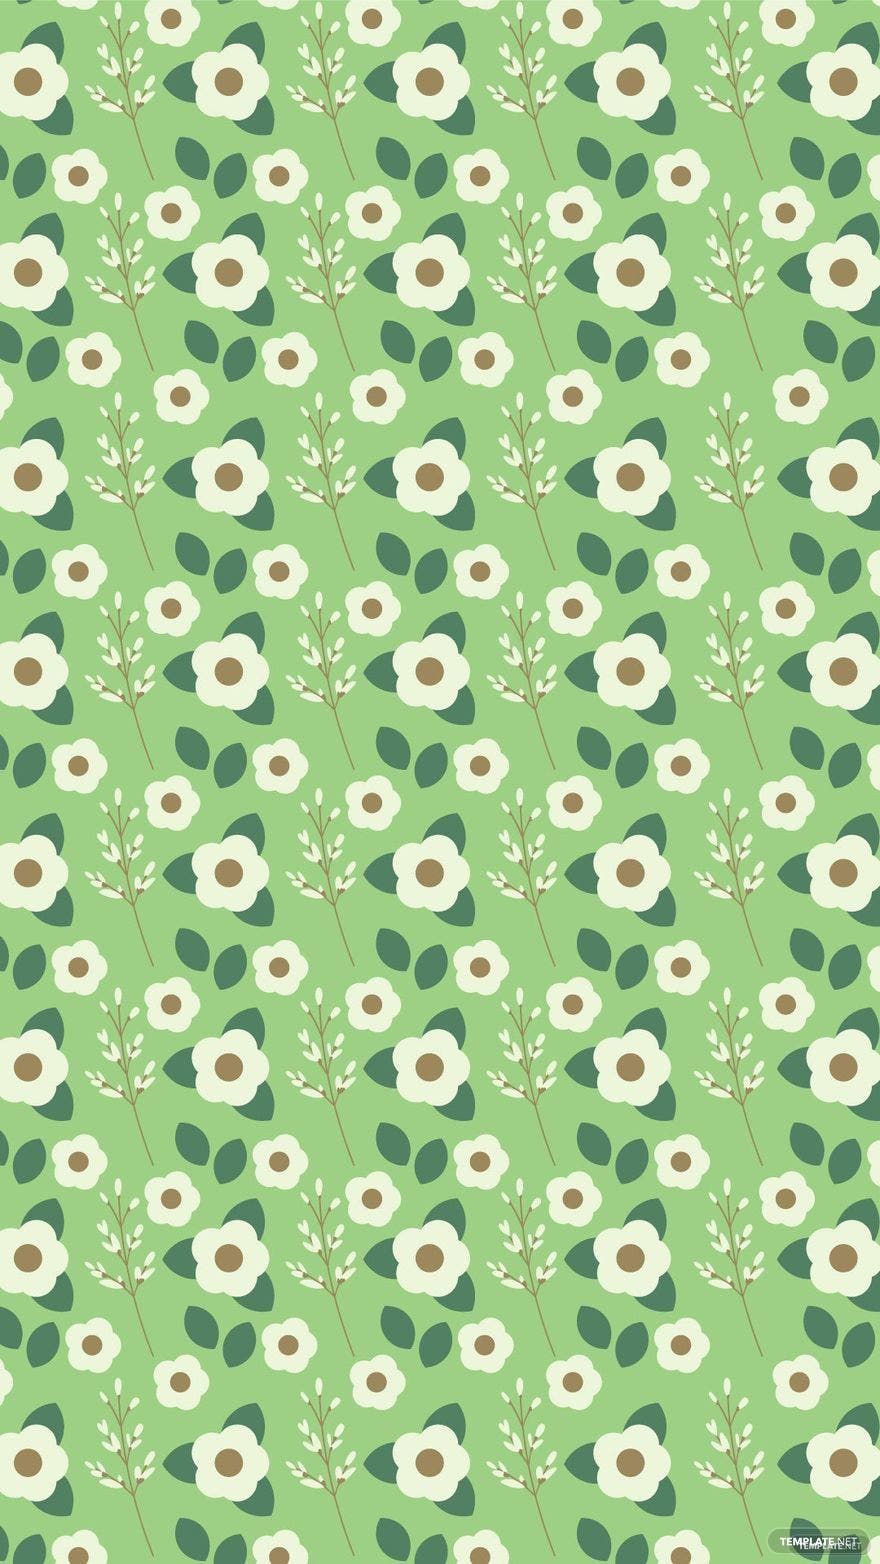 Free Green Floral Background Vector in Illustrator, EPS, SVG, JPG, PNG